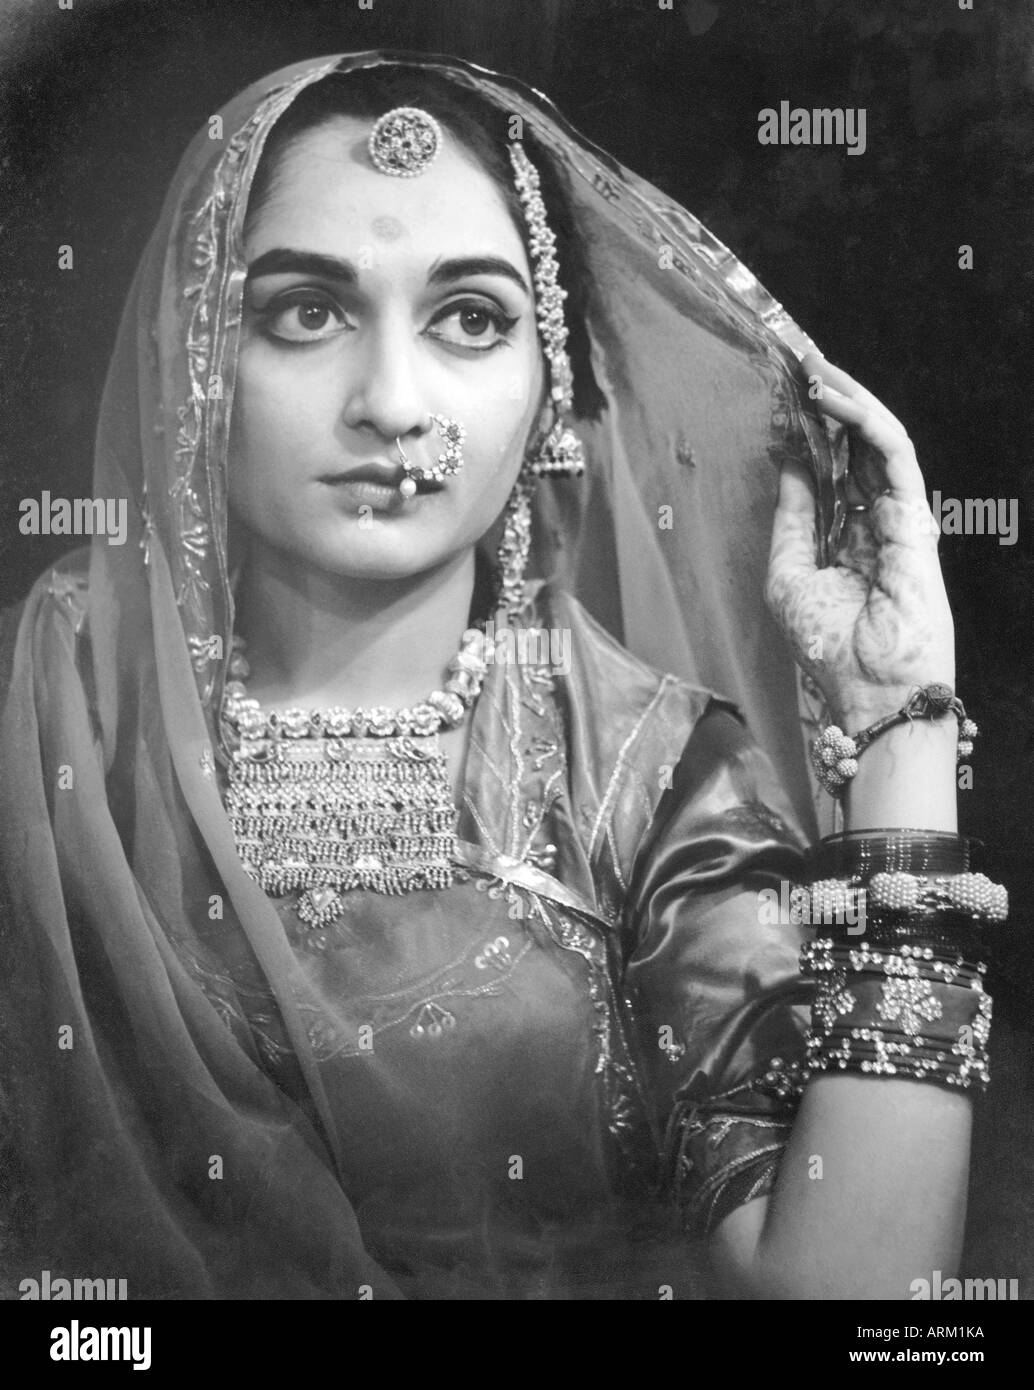 Vieux portrait des années 1940 de mariée indienne portant une robe de mariage Et bijoux Rajasthan Inde Asie années 1940 Banque D'Images